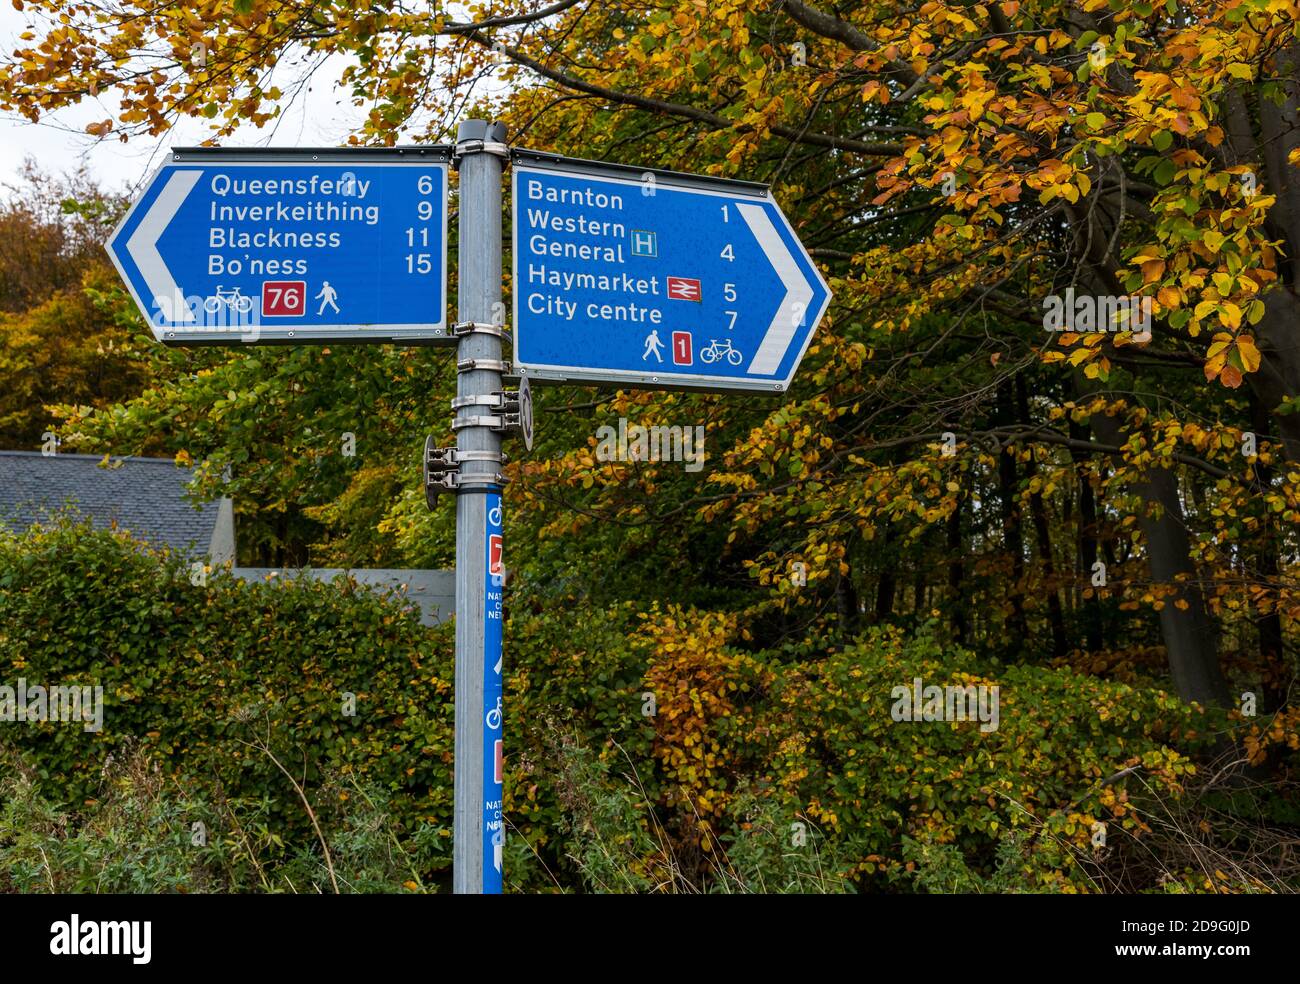 Panneau indiquant les itinéraires à pied et à vélo pour les pistes cyclables 1 et 76 avec arbres d'automne, Édimbourg, Écosse, Royaume-Uni Banque D'Images